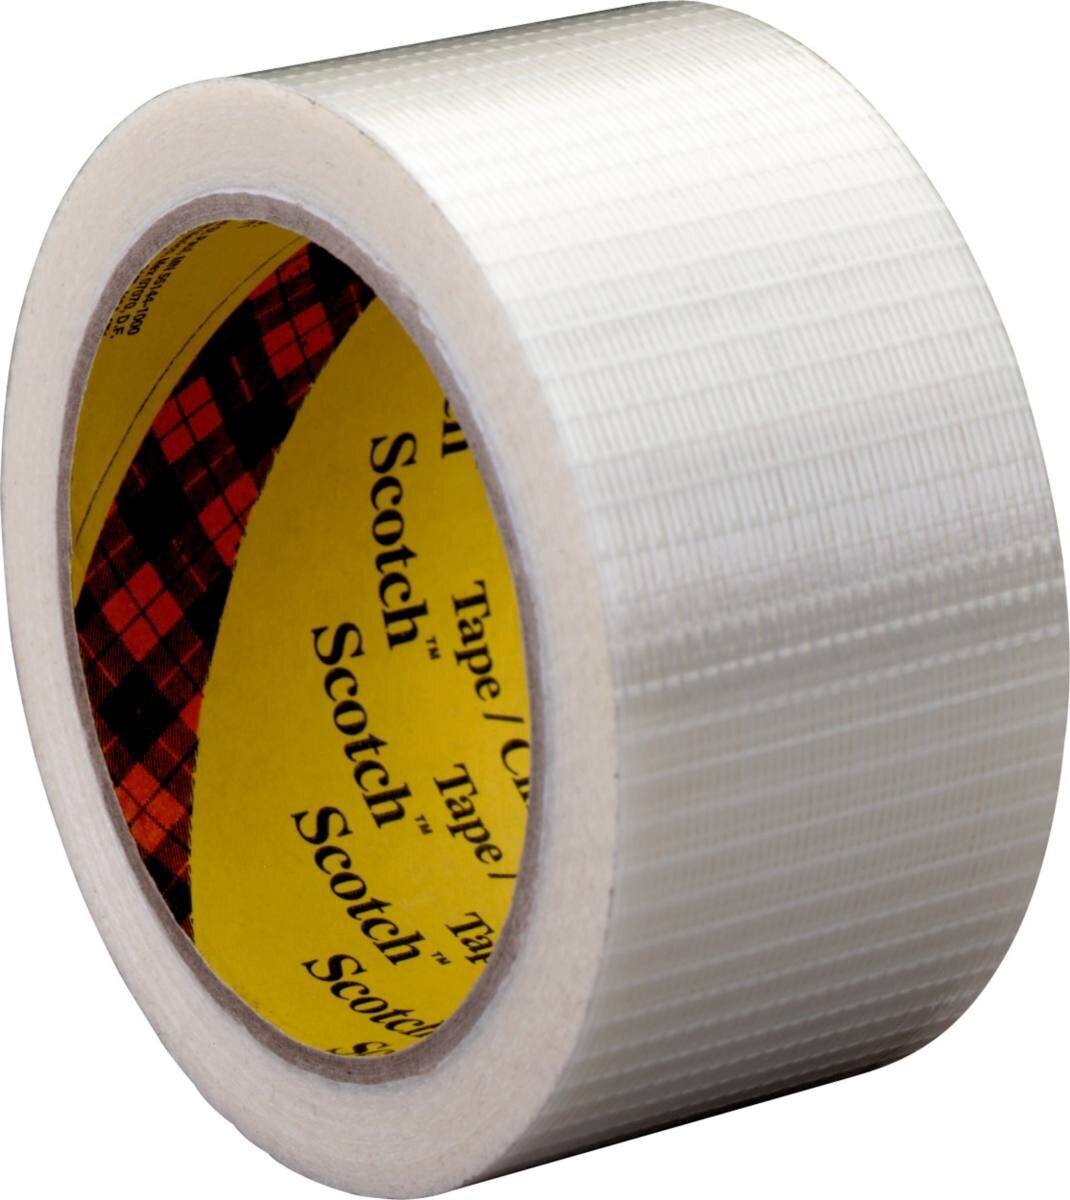 3M Scotch Filament Adhesive Tape 8959, trasparente, 19 mm x 50 m, 0,145 mm